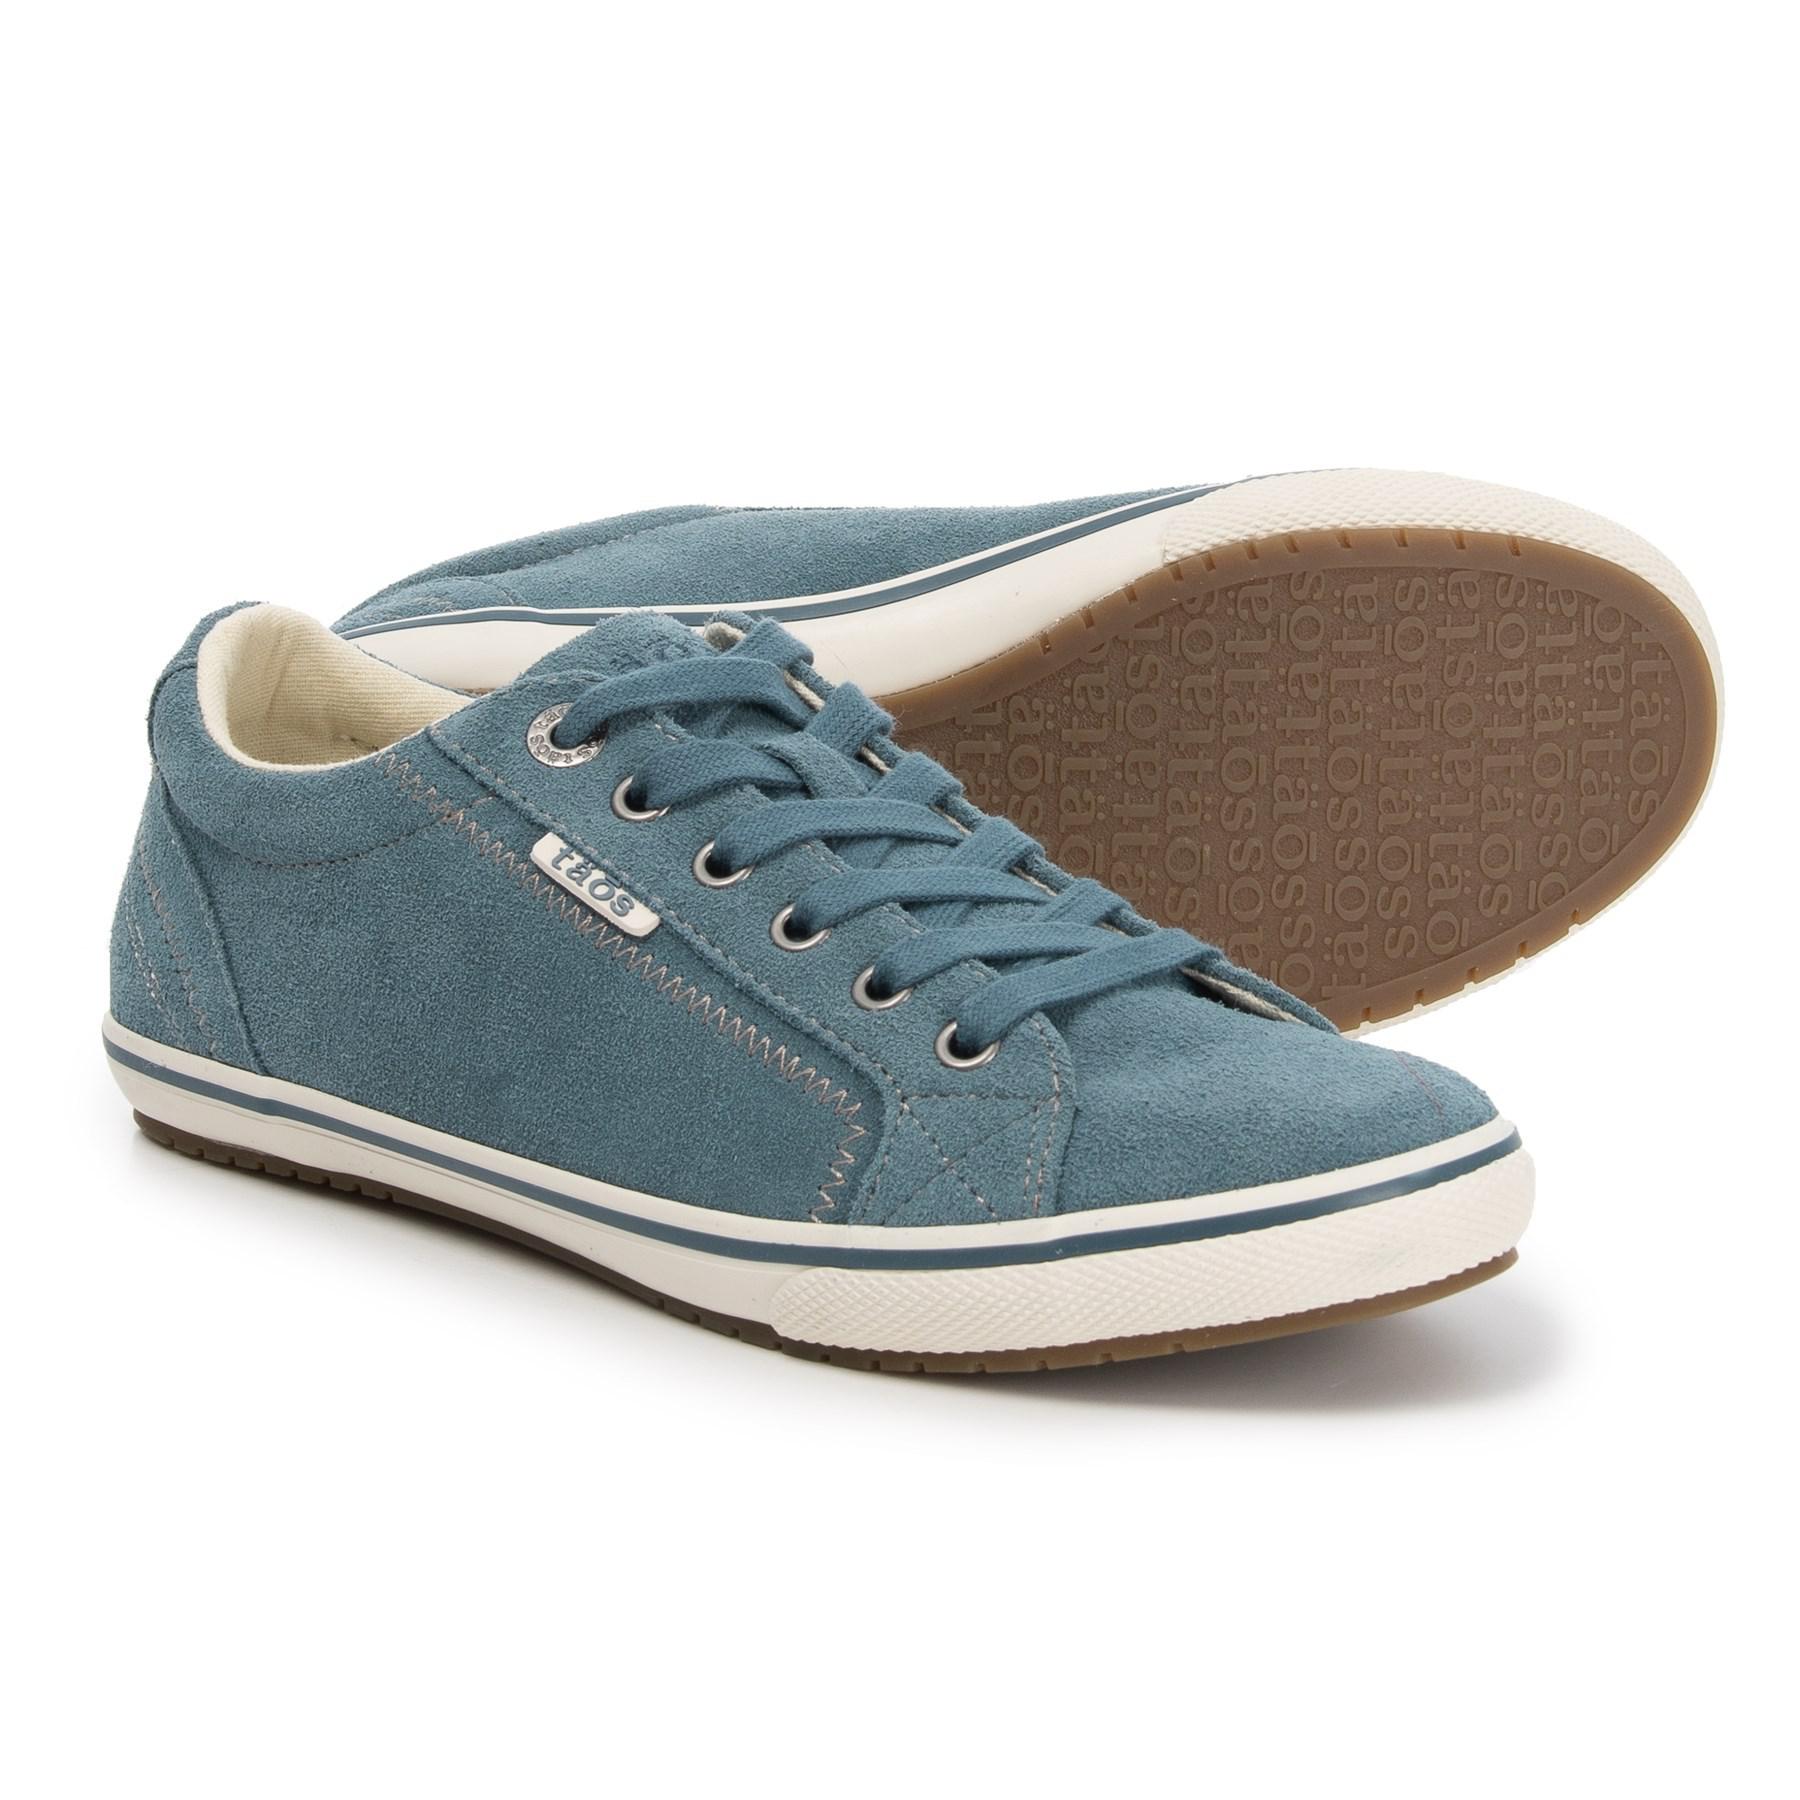 Taos Footwear Suede Retro Star Sneakers in Blue Suede